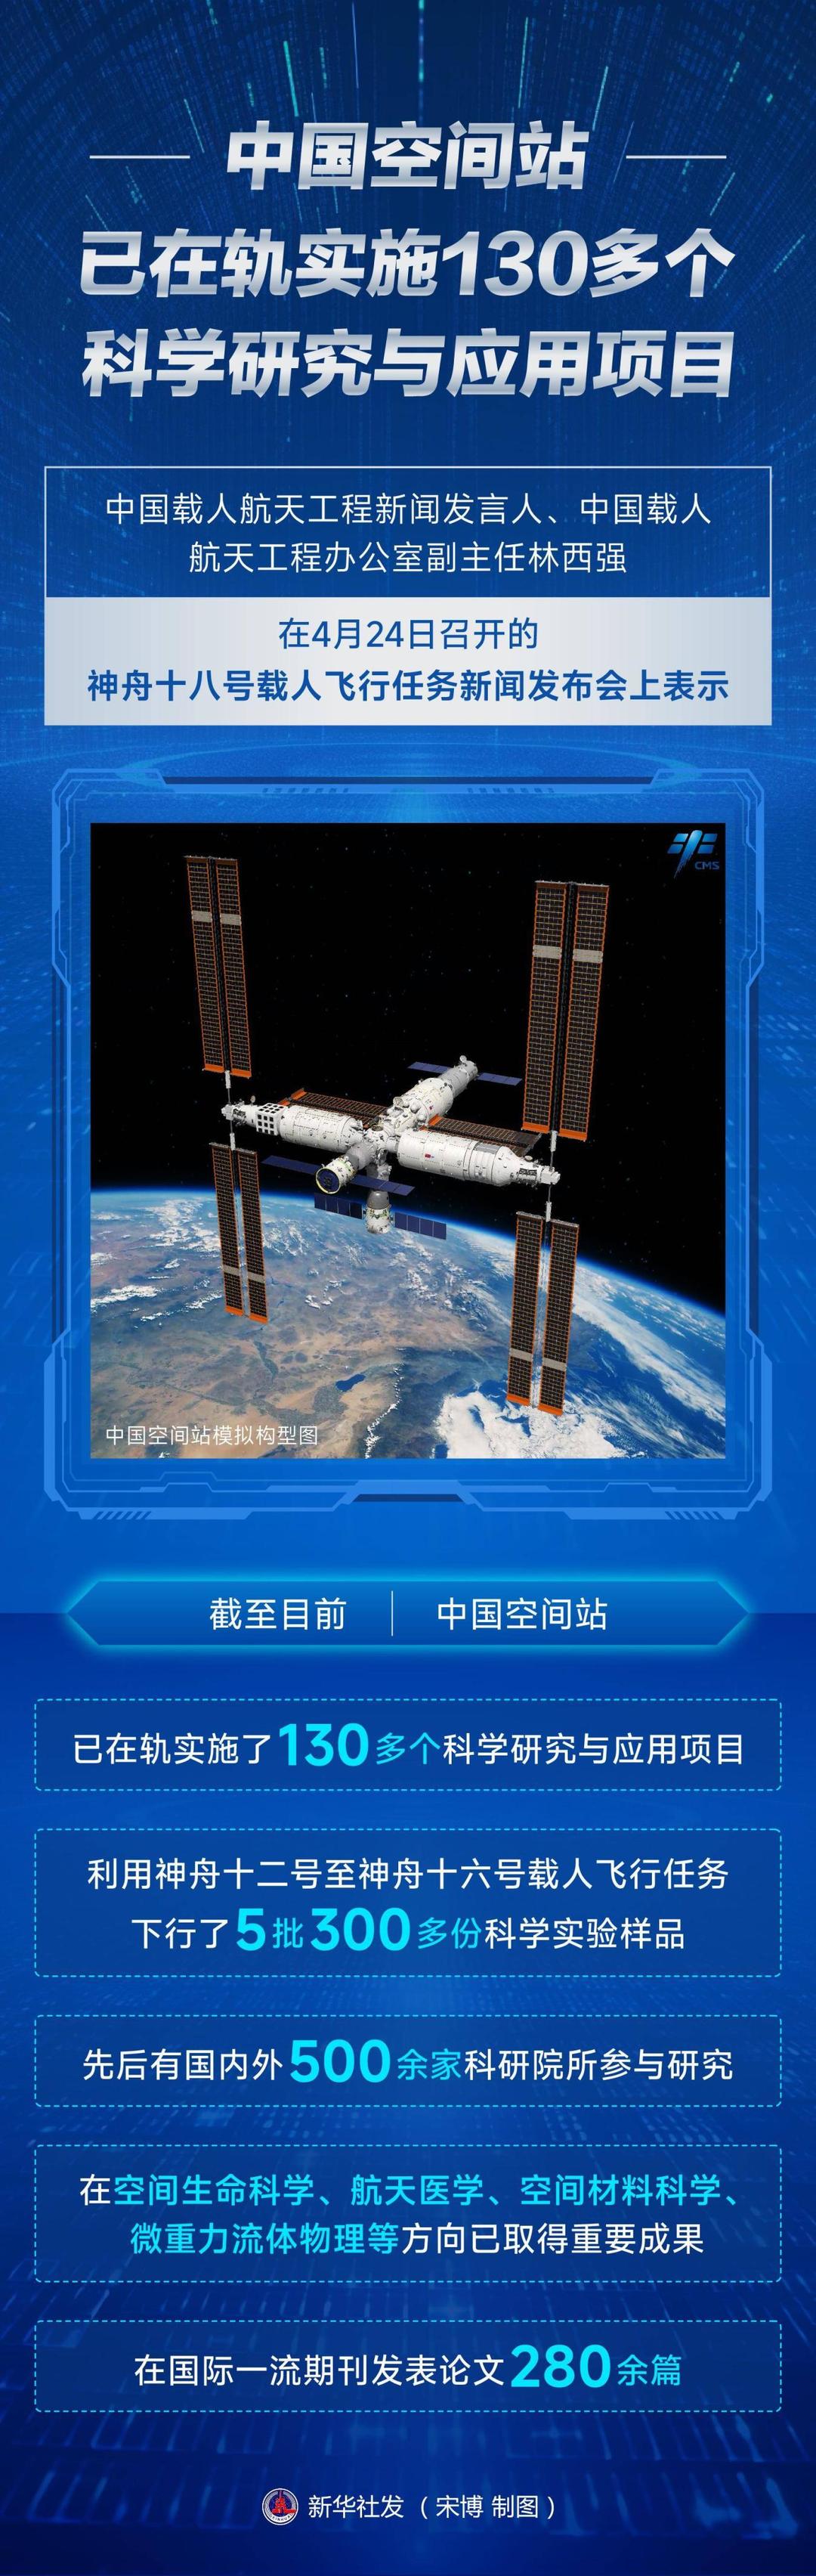 中国空间站已在轨实施130多个科学研究与应用项目